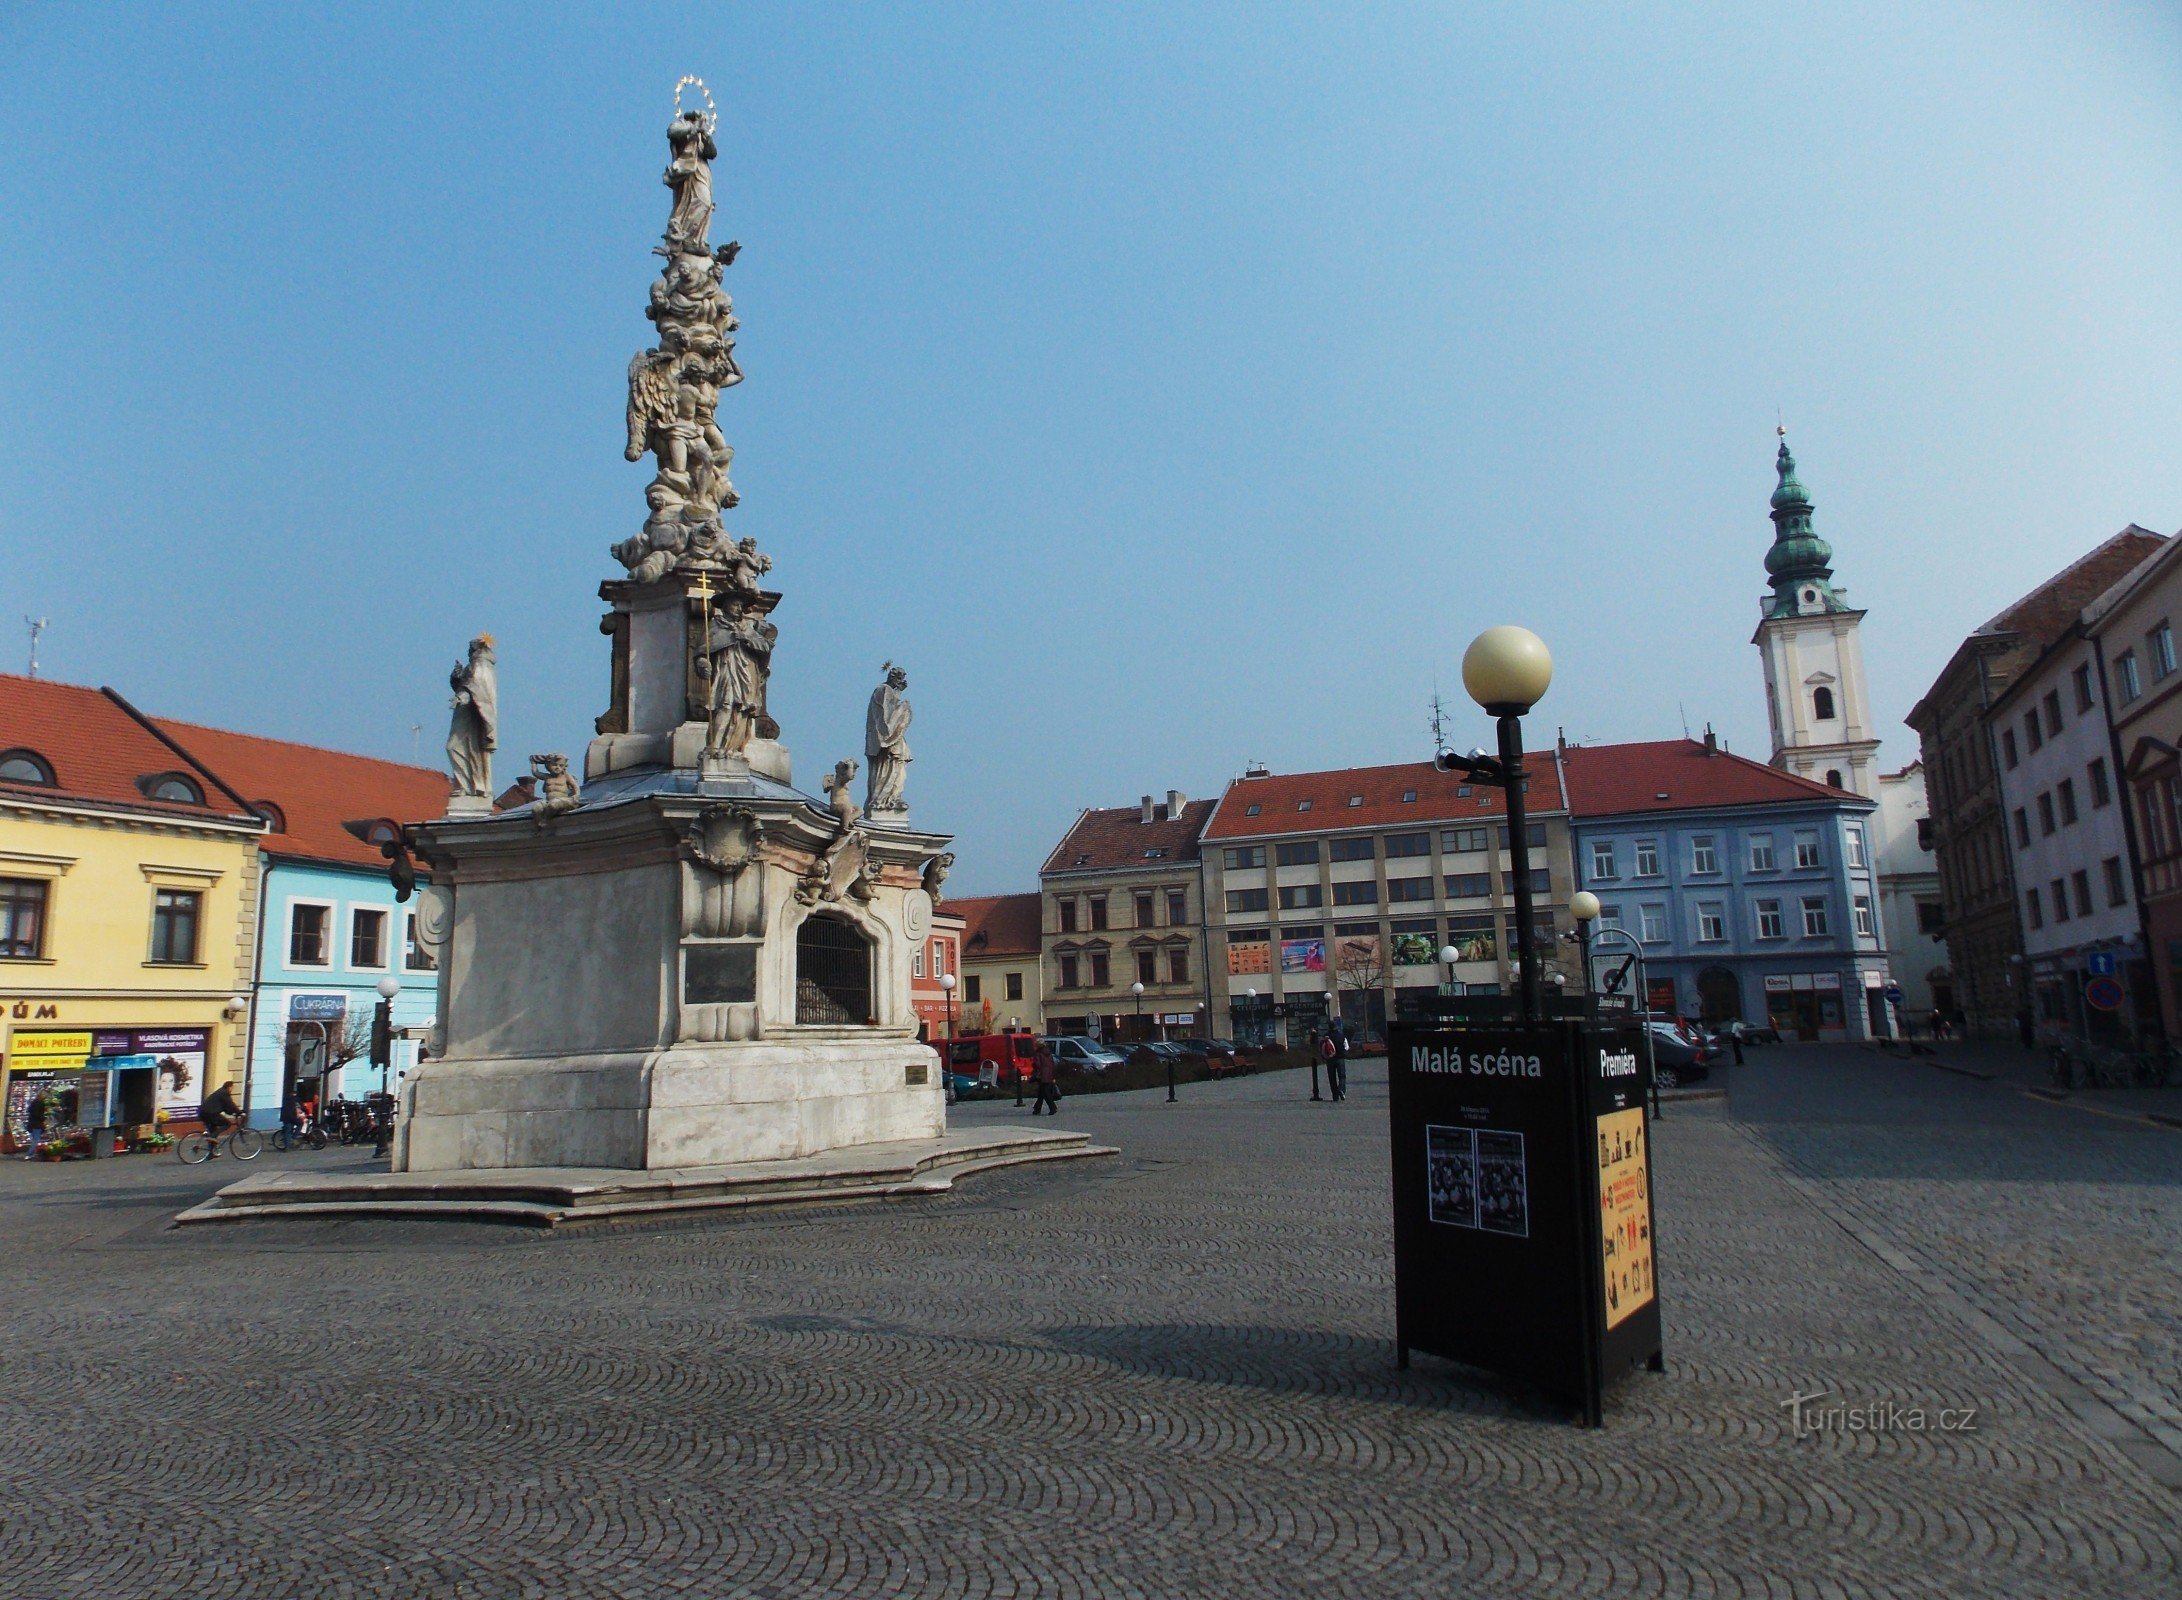 Peste Mariánské náměstí în Uherské Hradiště